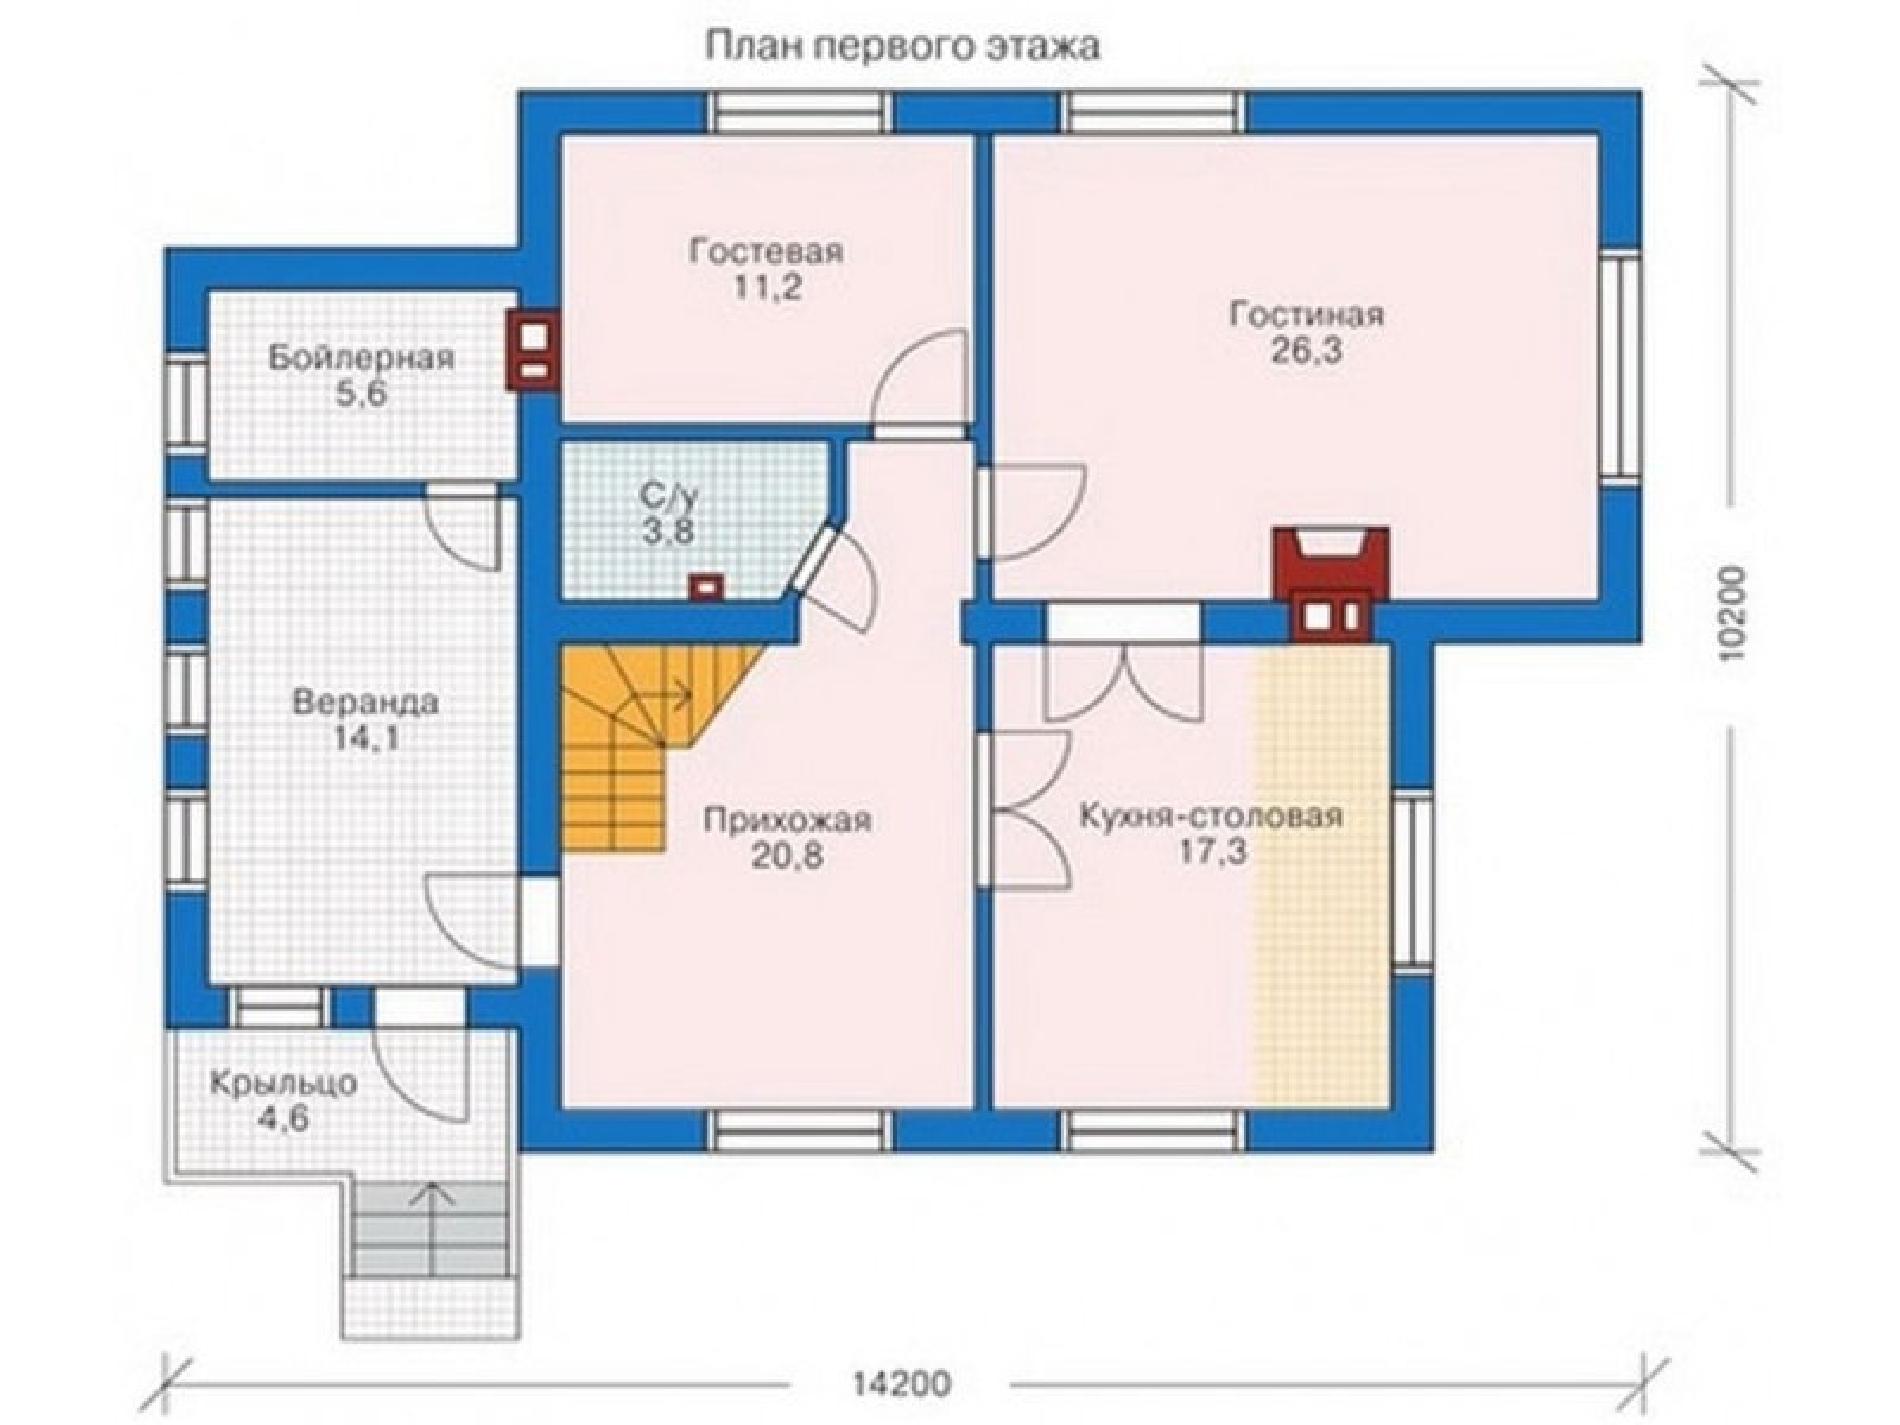 Планировка проекта дома №53-02 53-02_p (1)-min.jpg